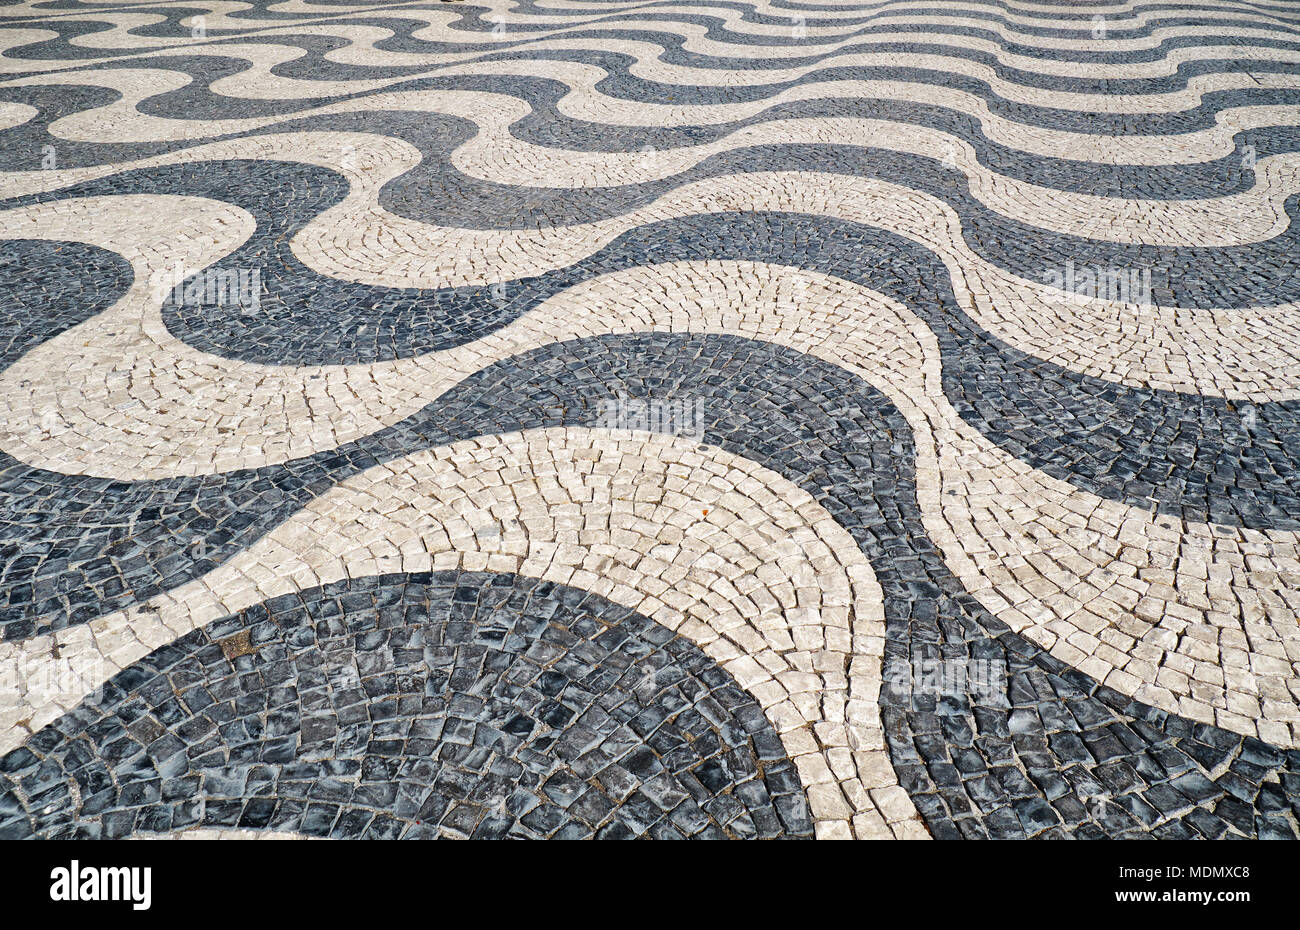 Le motif en forme de vagues de la tradition mosaïque chaussée portugaise conçu avec le noir et blanc des pierres de basalte et de calcaire sur la place Rossio. Lisb Banque D'Images